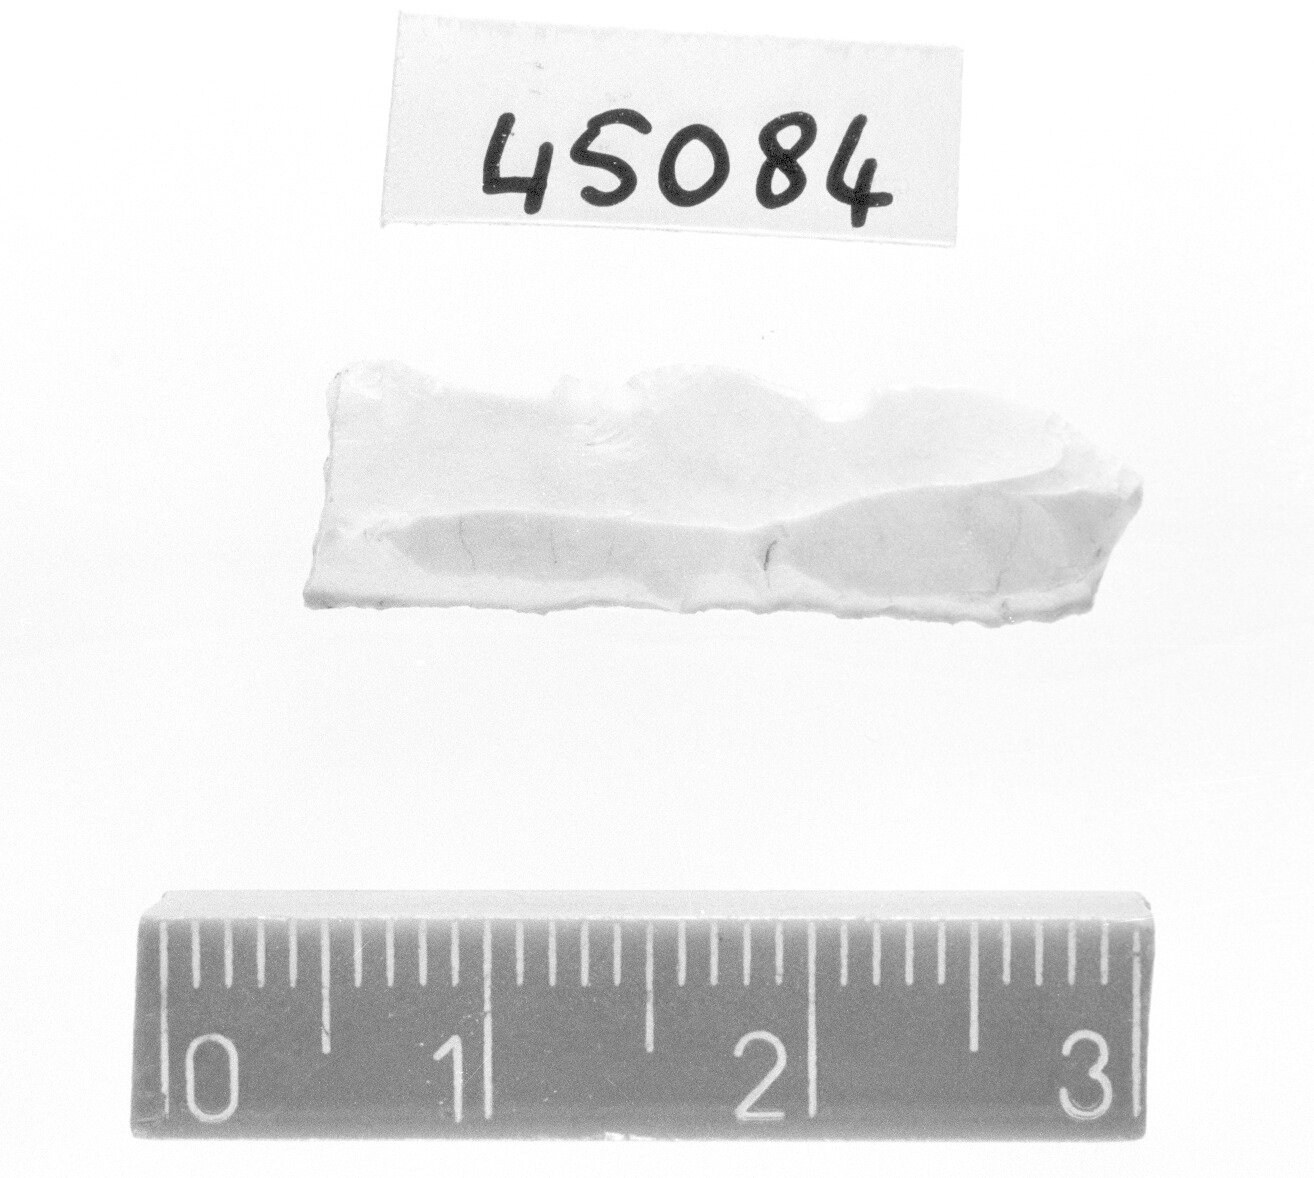 lamella a dorso e troncatura marginale/ frammento (Paleolitico superiore)